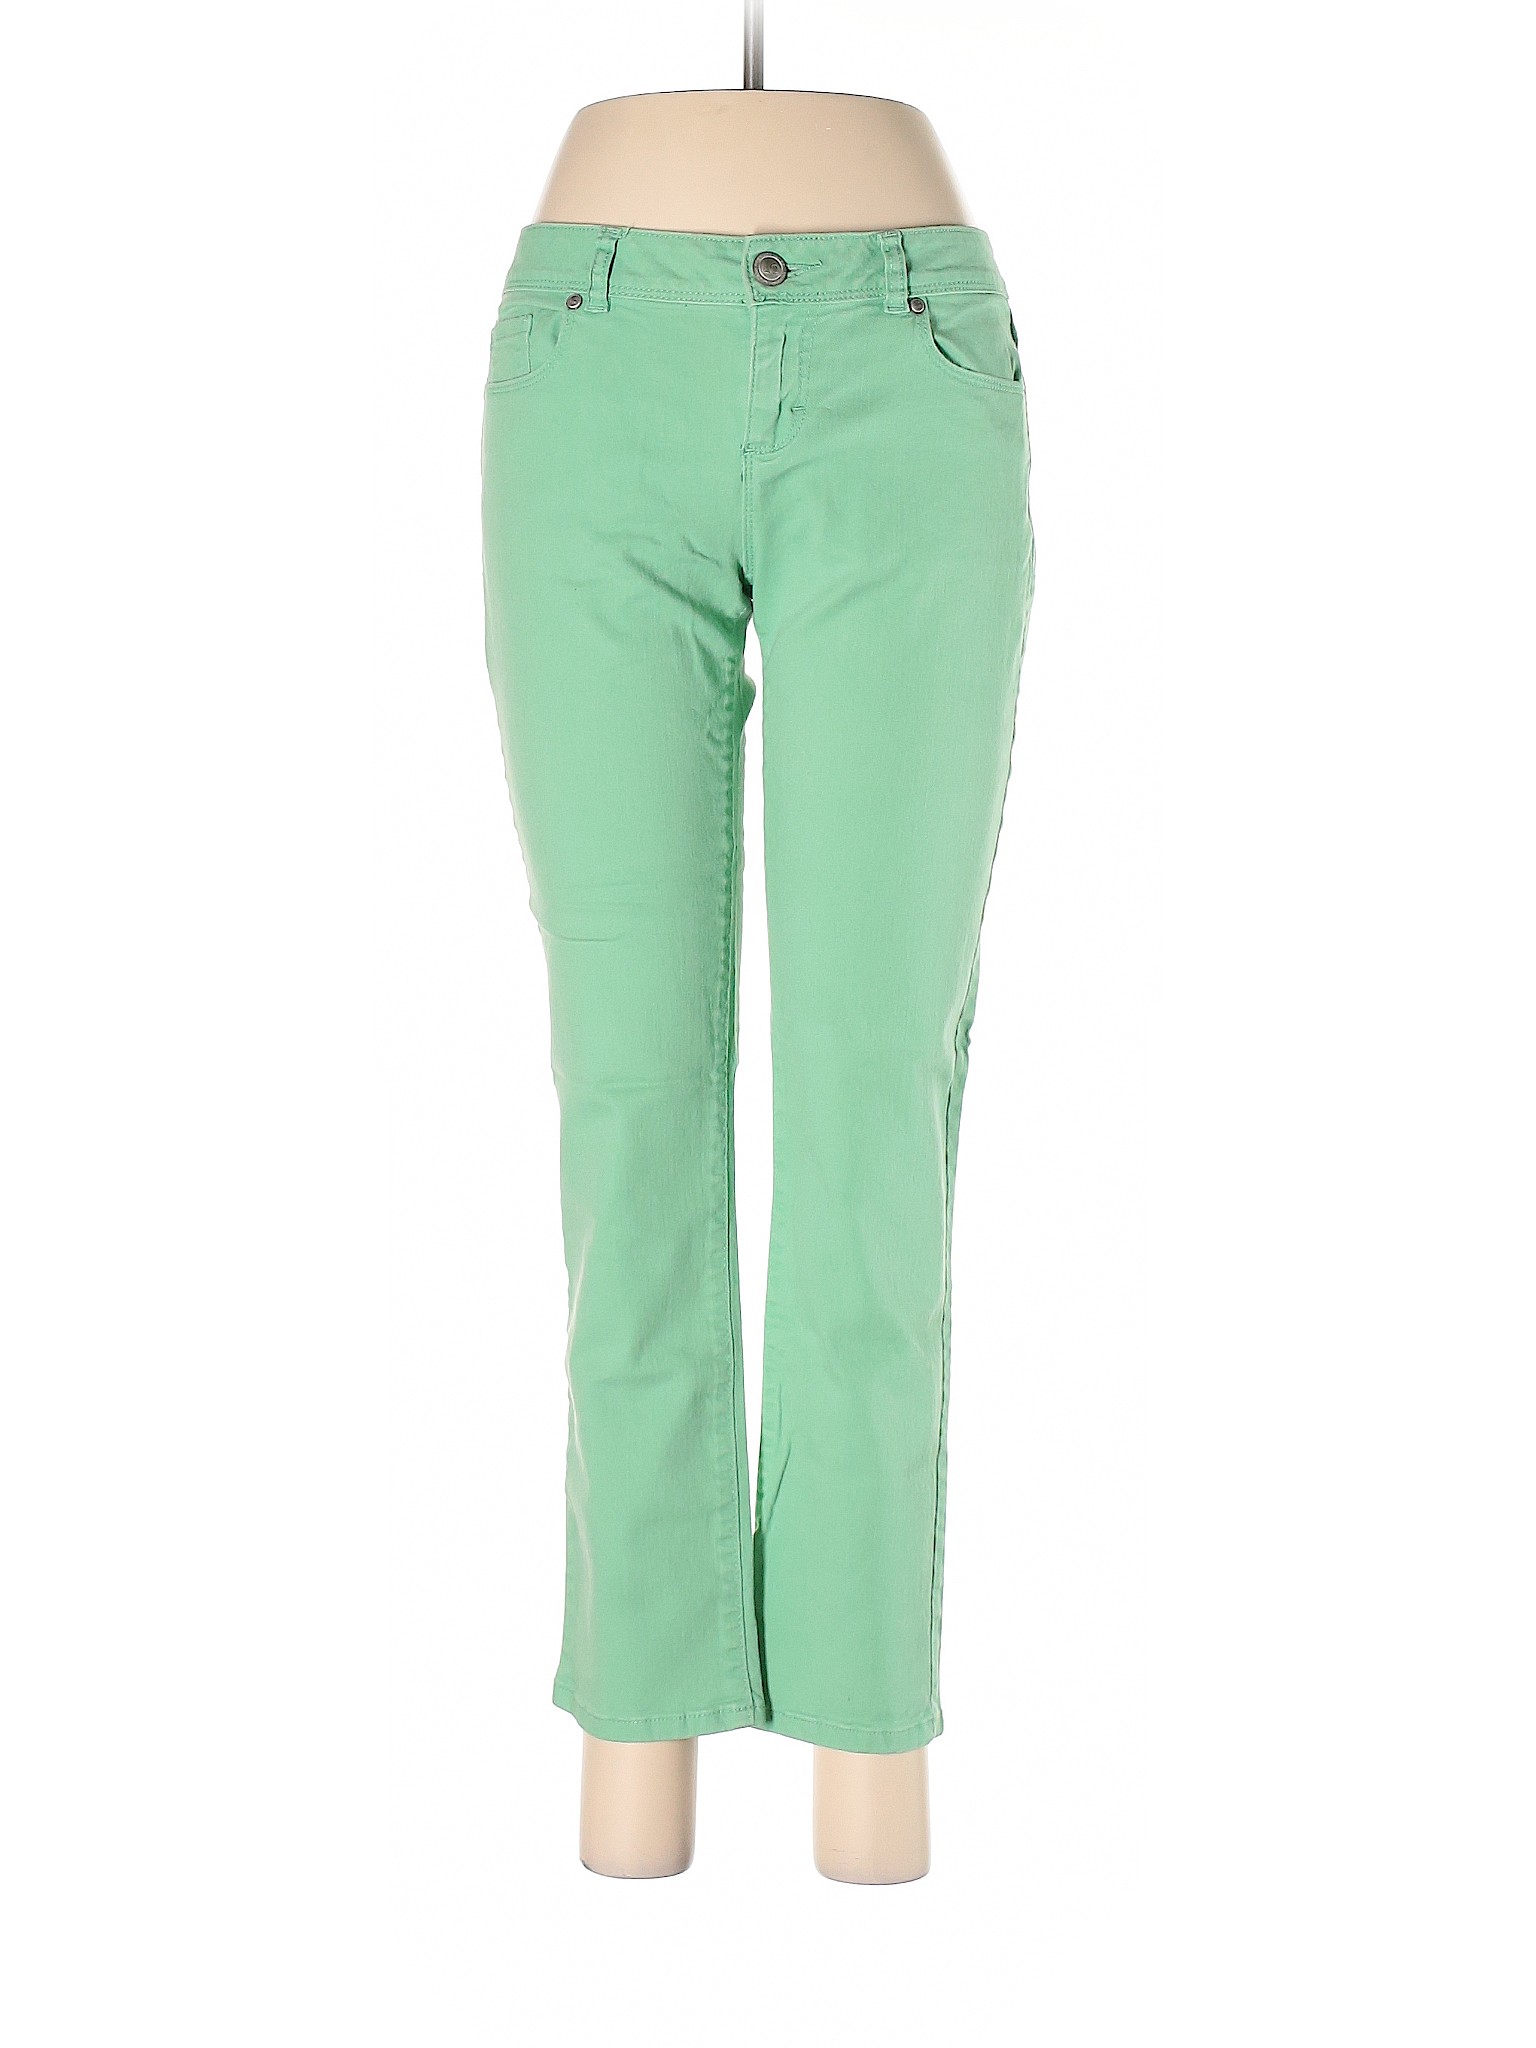 LC Lauren Conrad Women Green Jeans 6 | eBay